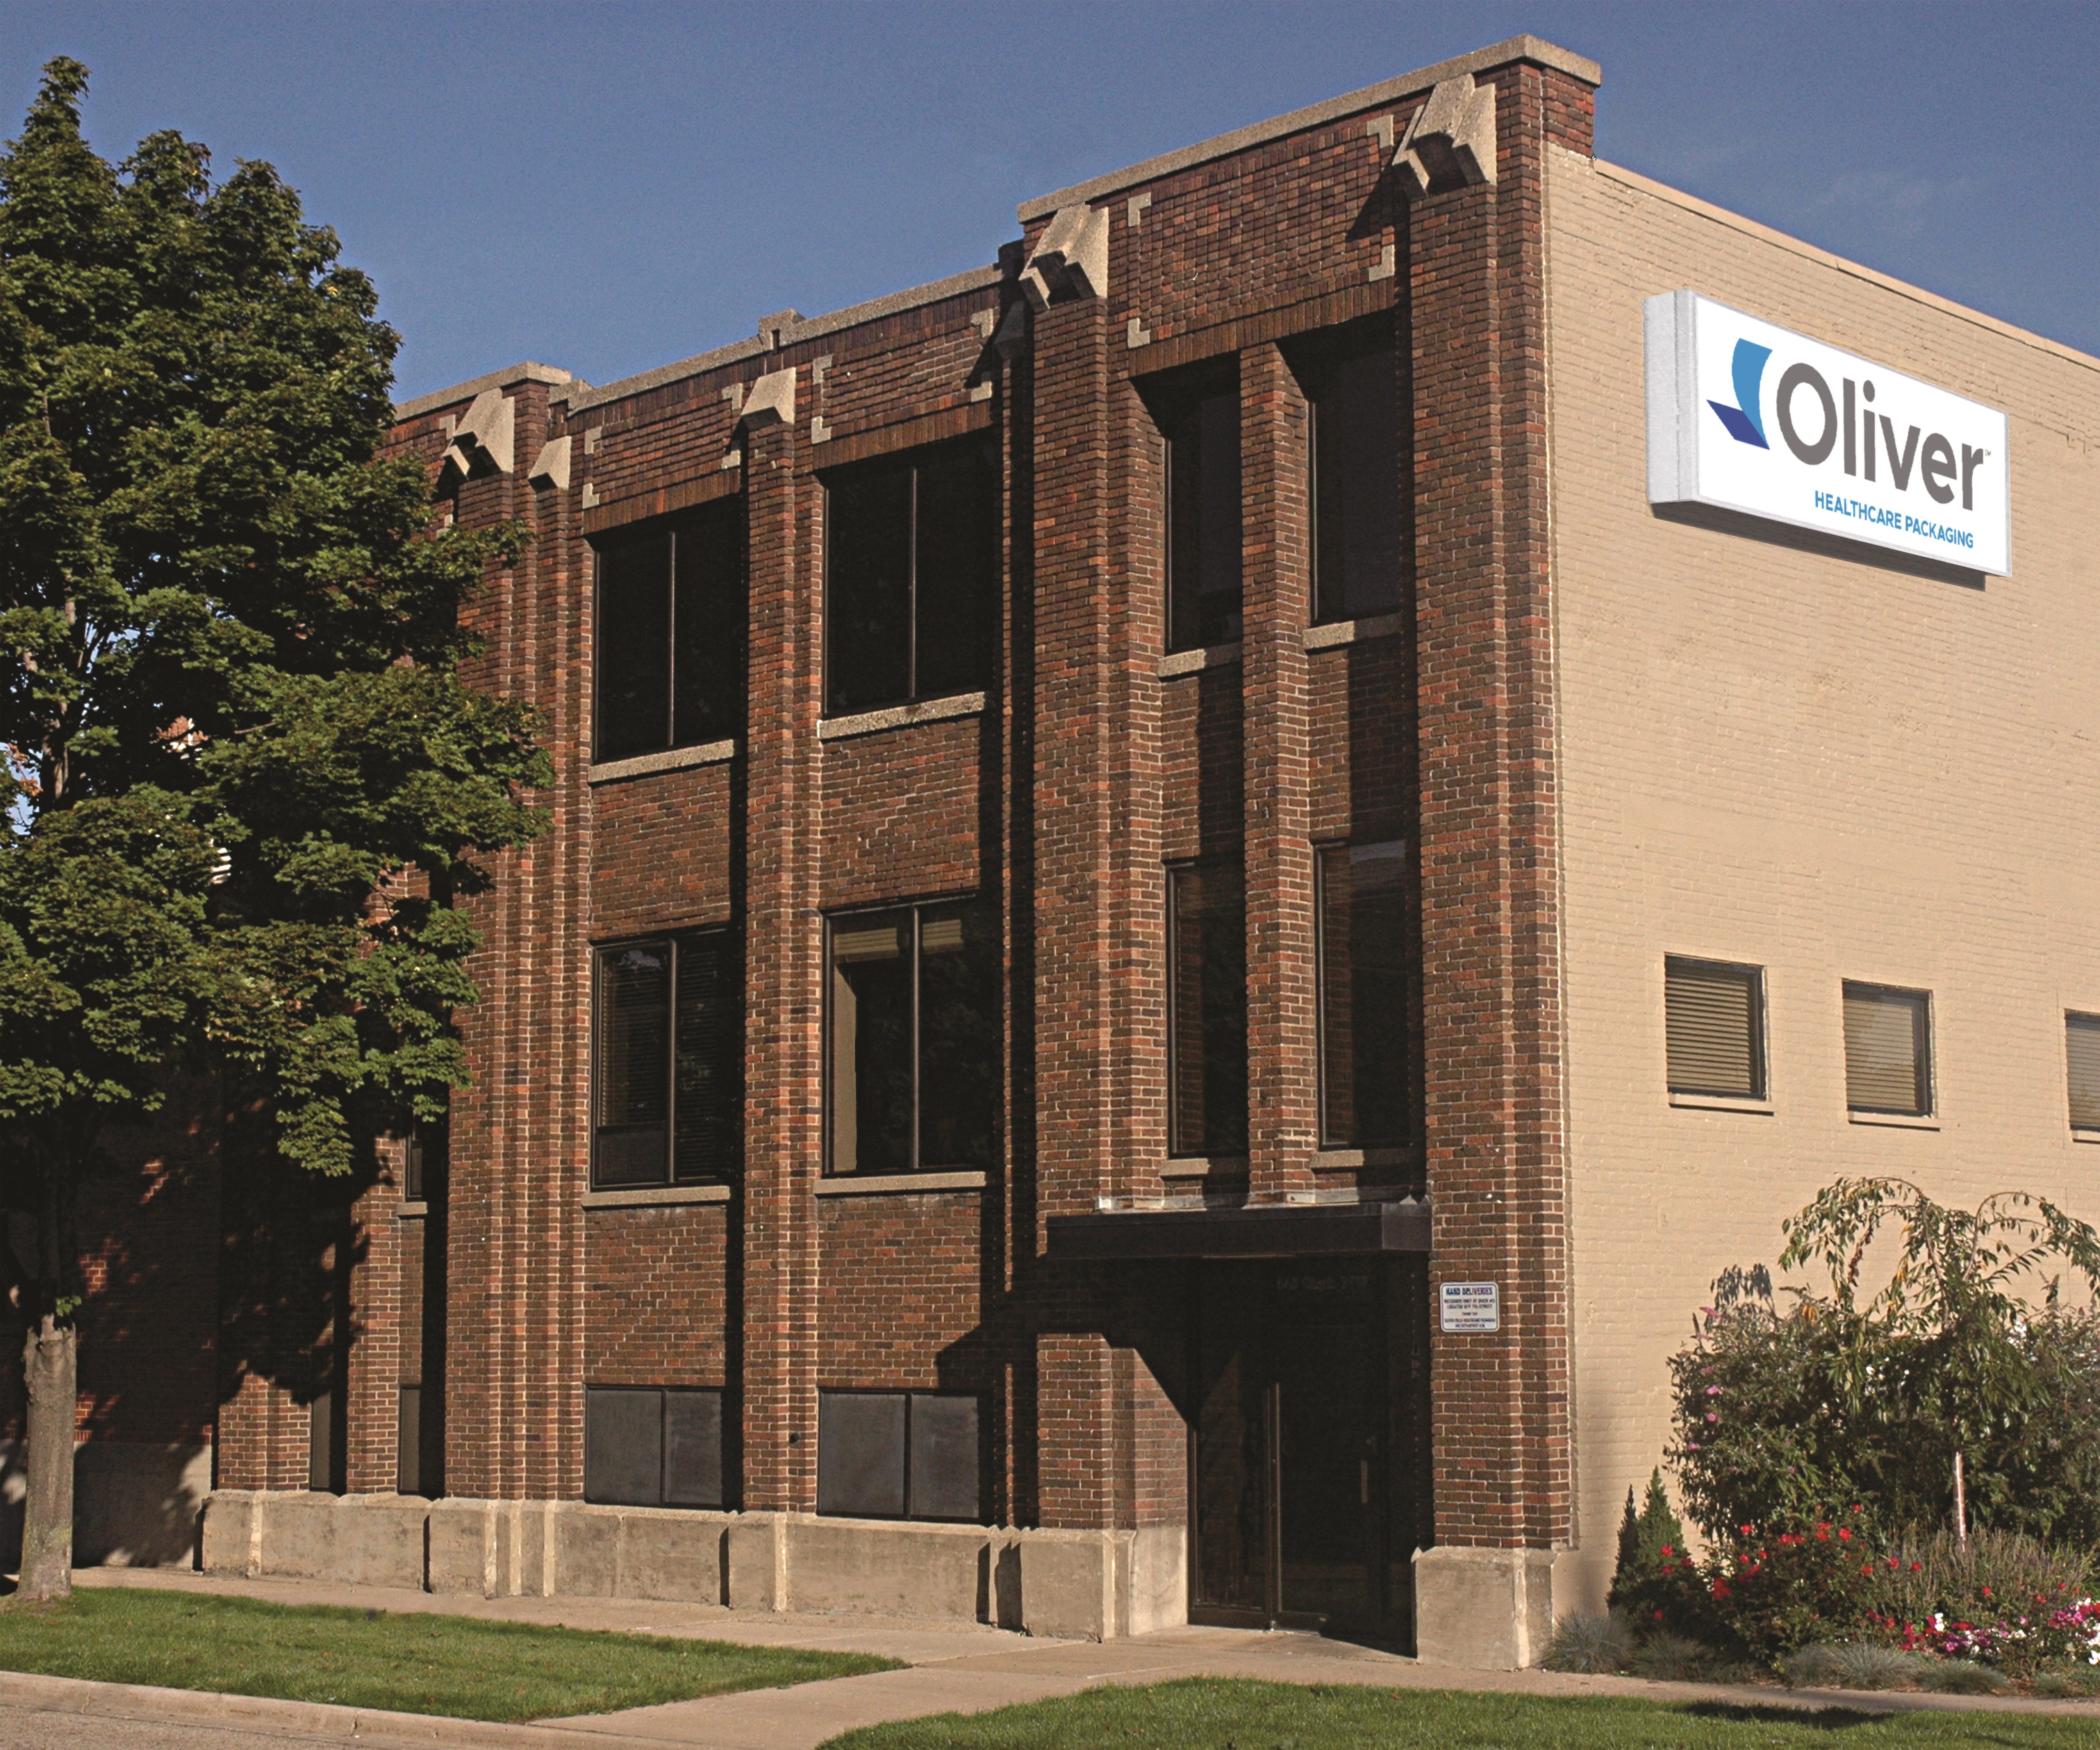 Ubicación Oliver en Grand Rapids, Míchigan